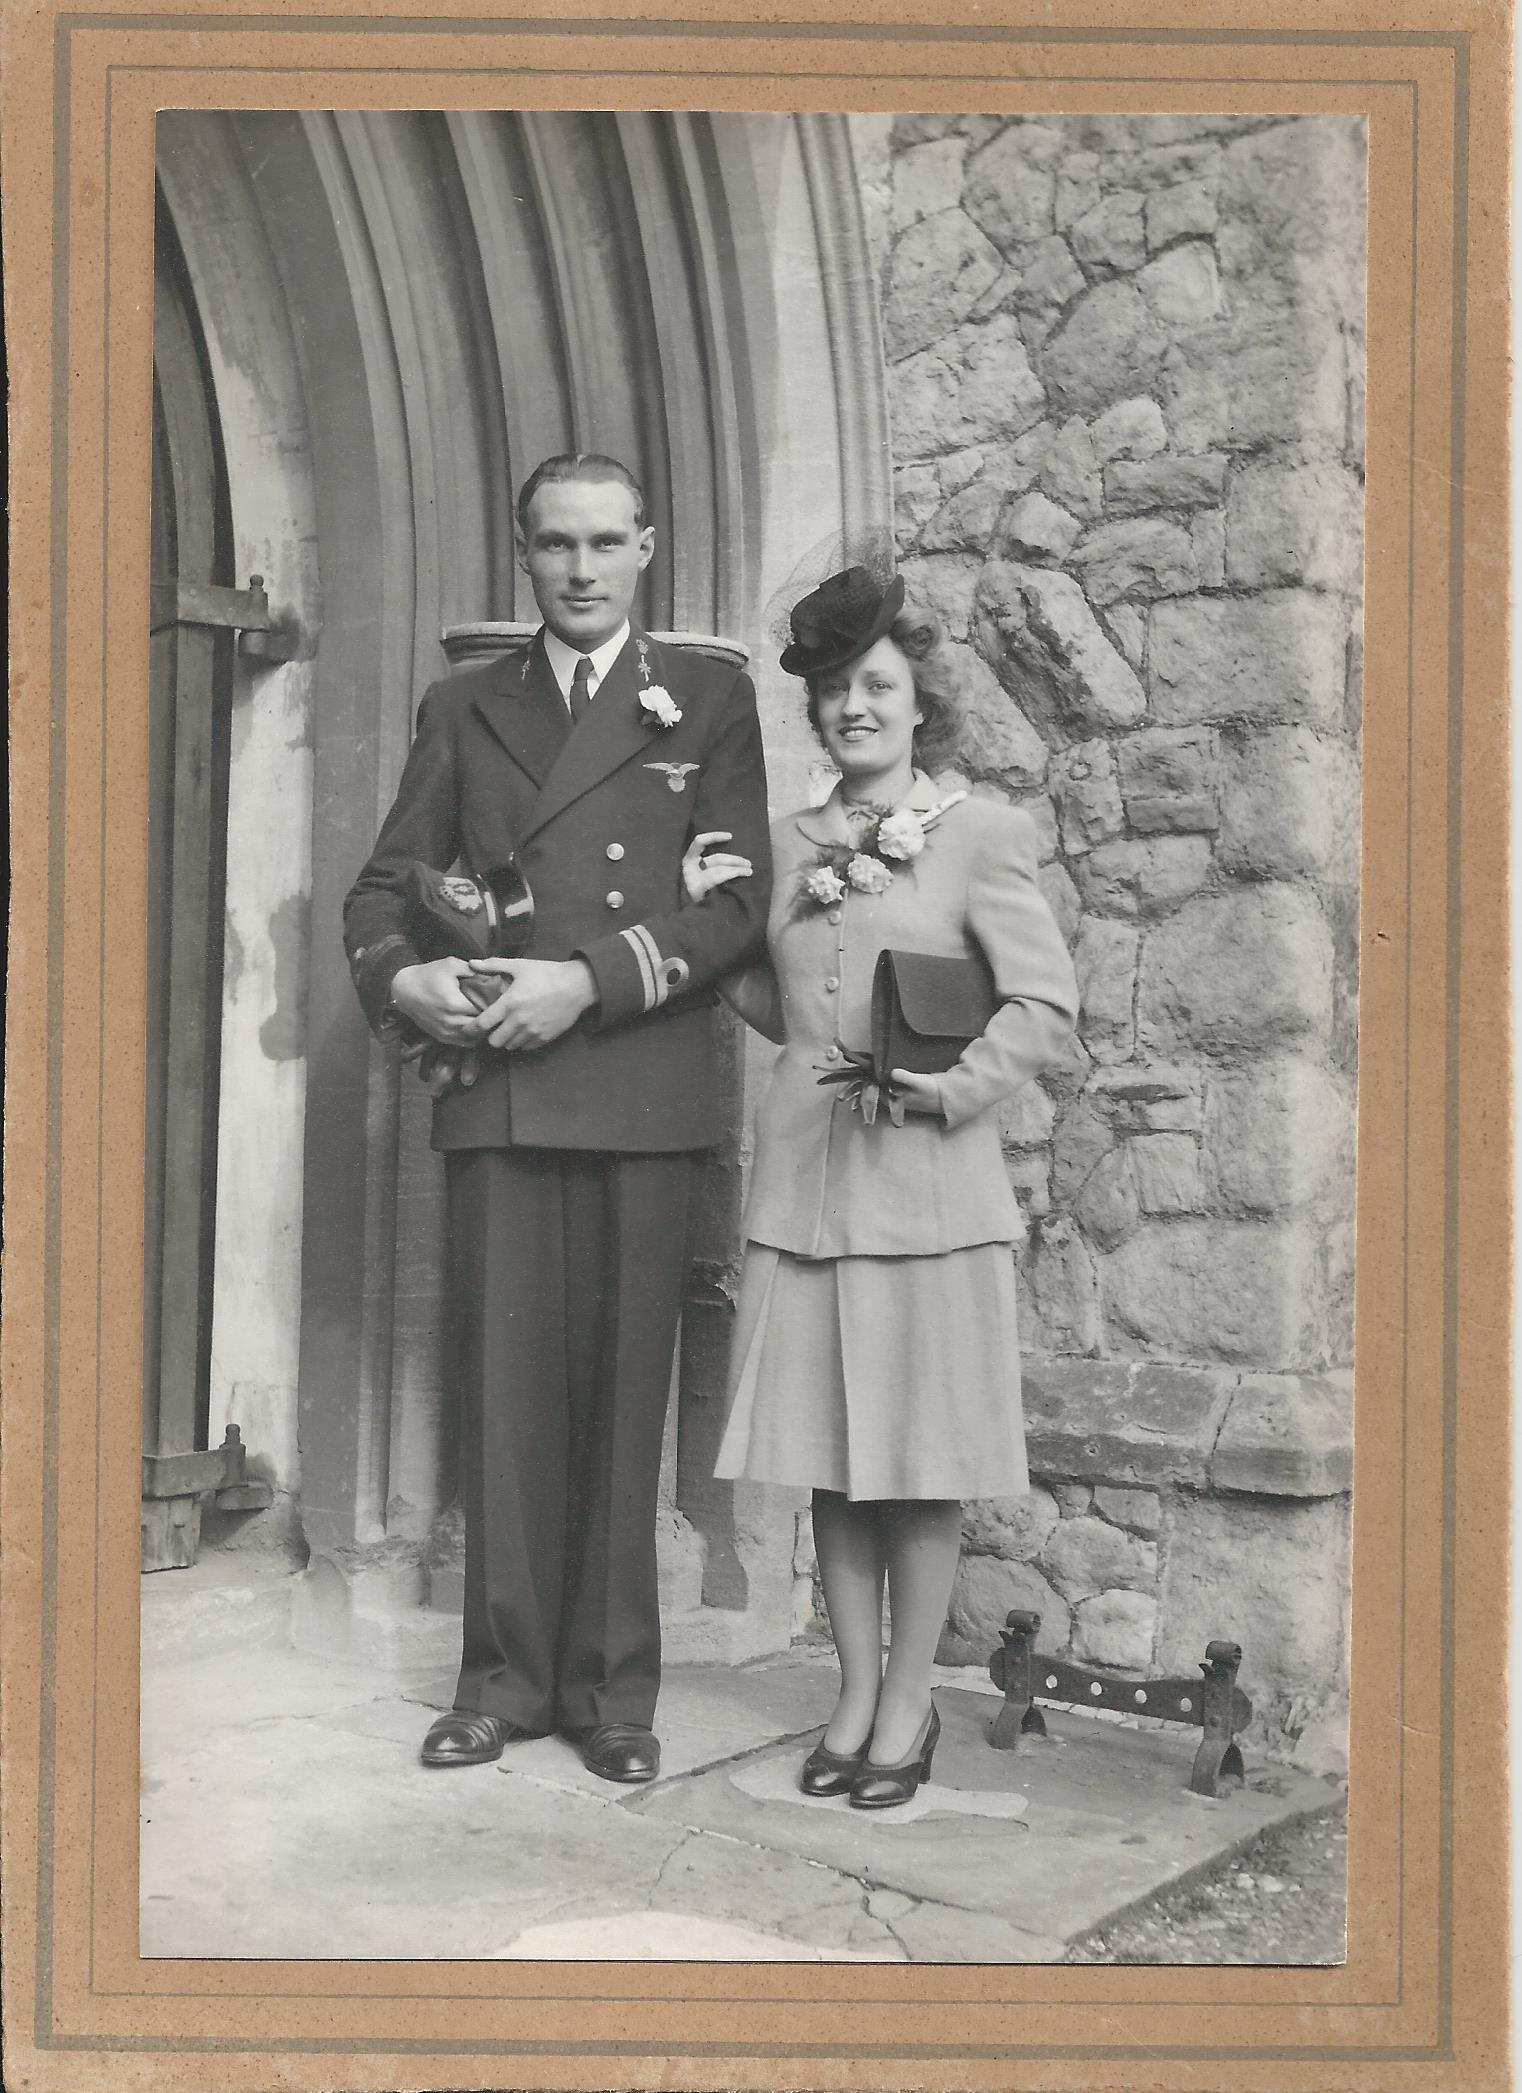 Huwelijk van Folkert Bouma met Viviene Cooke op 7 oktober 1943 in Engeland